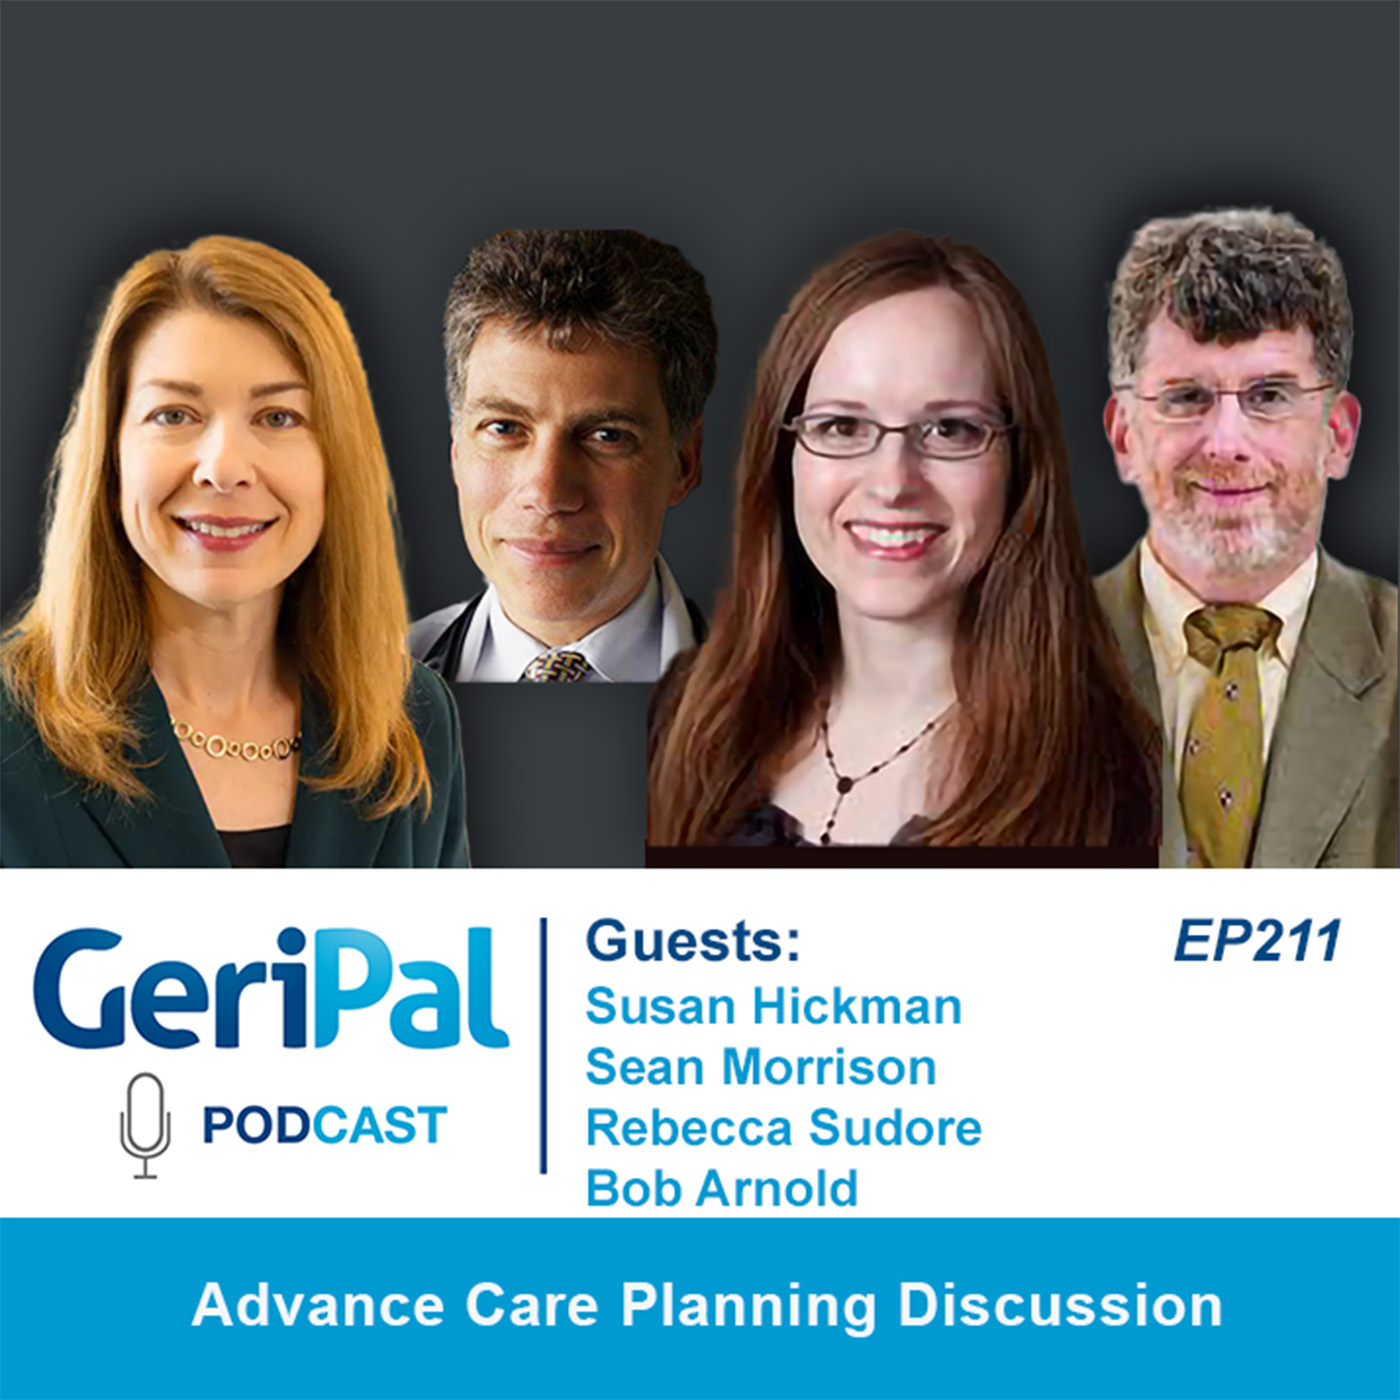 Advance Care Planning Discussion: Susan Hickman, Sean Morrison, Rebecca Sudore, and Bob Arnold